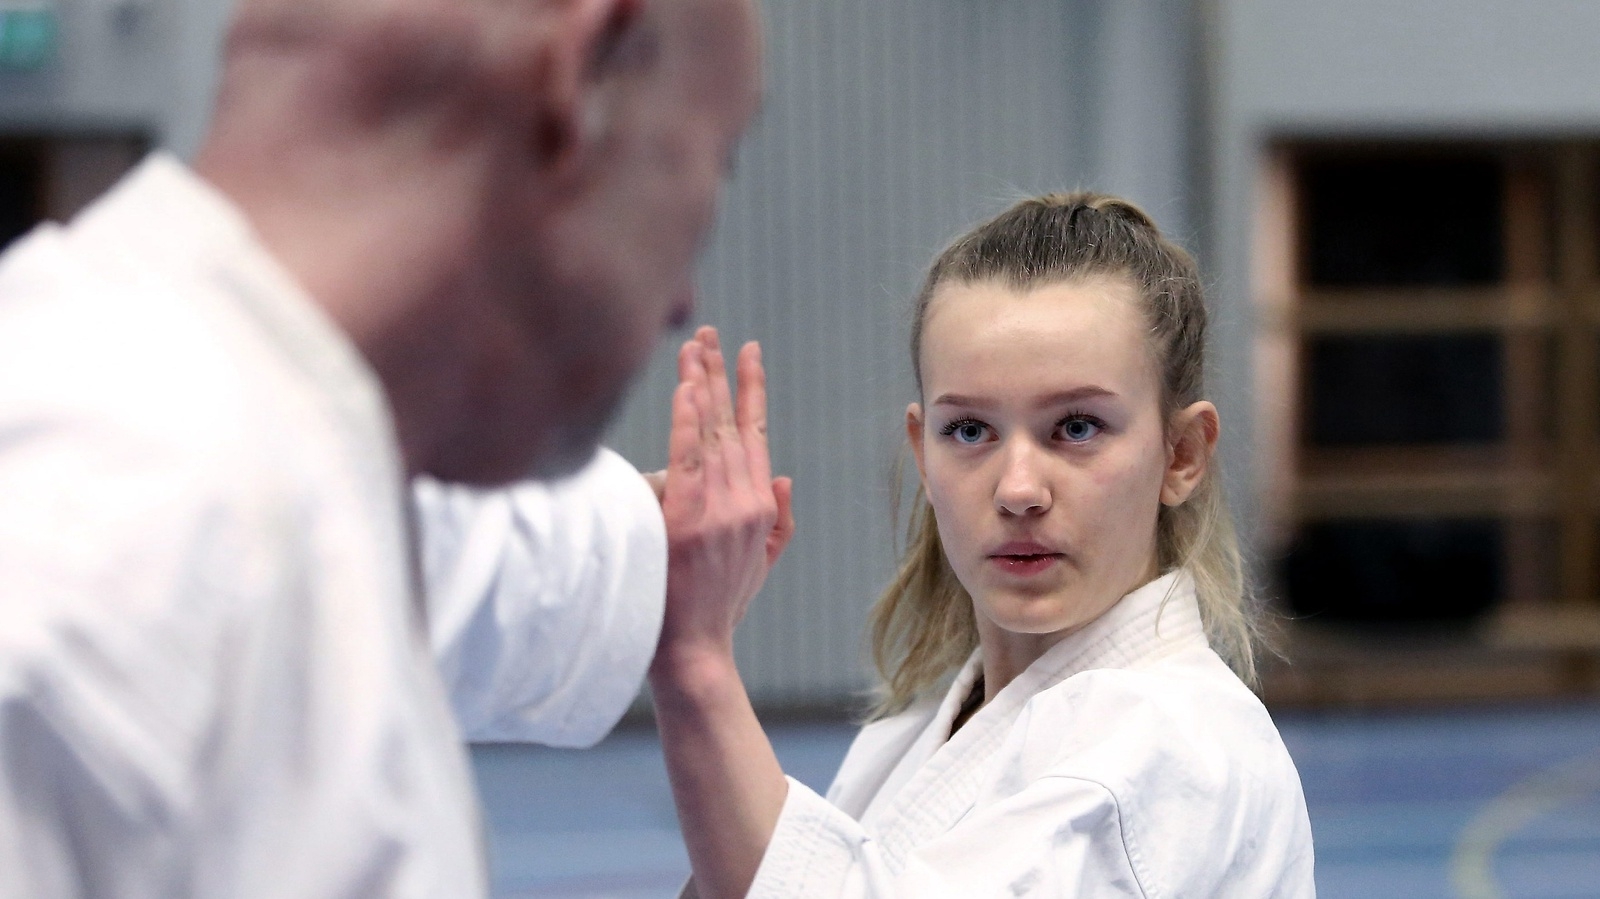 Sofia Walther är oerhört målinriktad med sin karate men samtidigt väldigt ödmjuk, och det är ingredienser som hittills tagit henne väldigt långt. Foto: Stefan Sandström